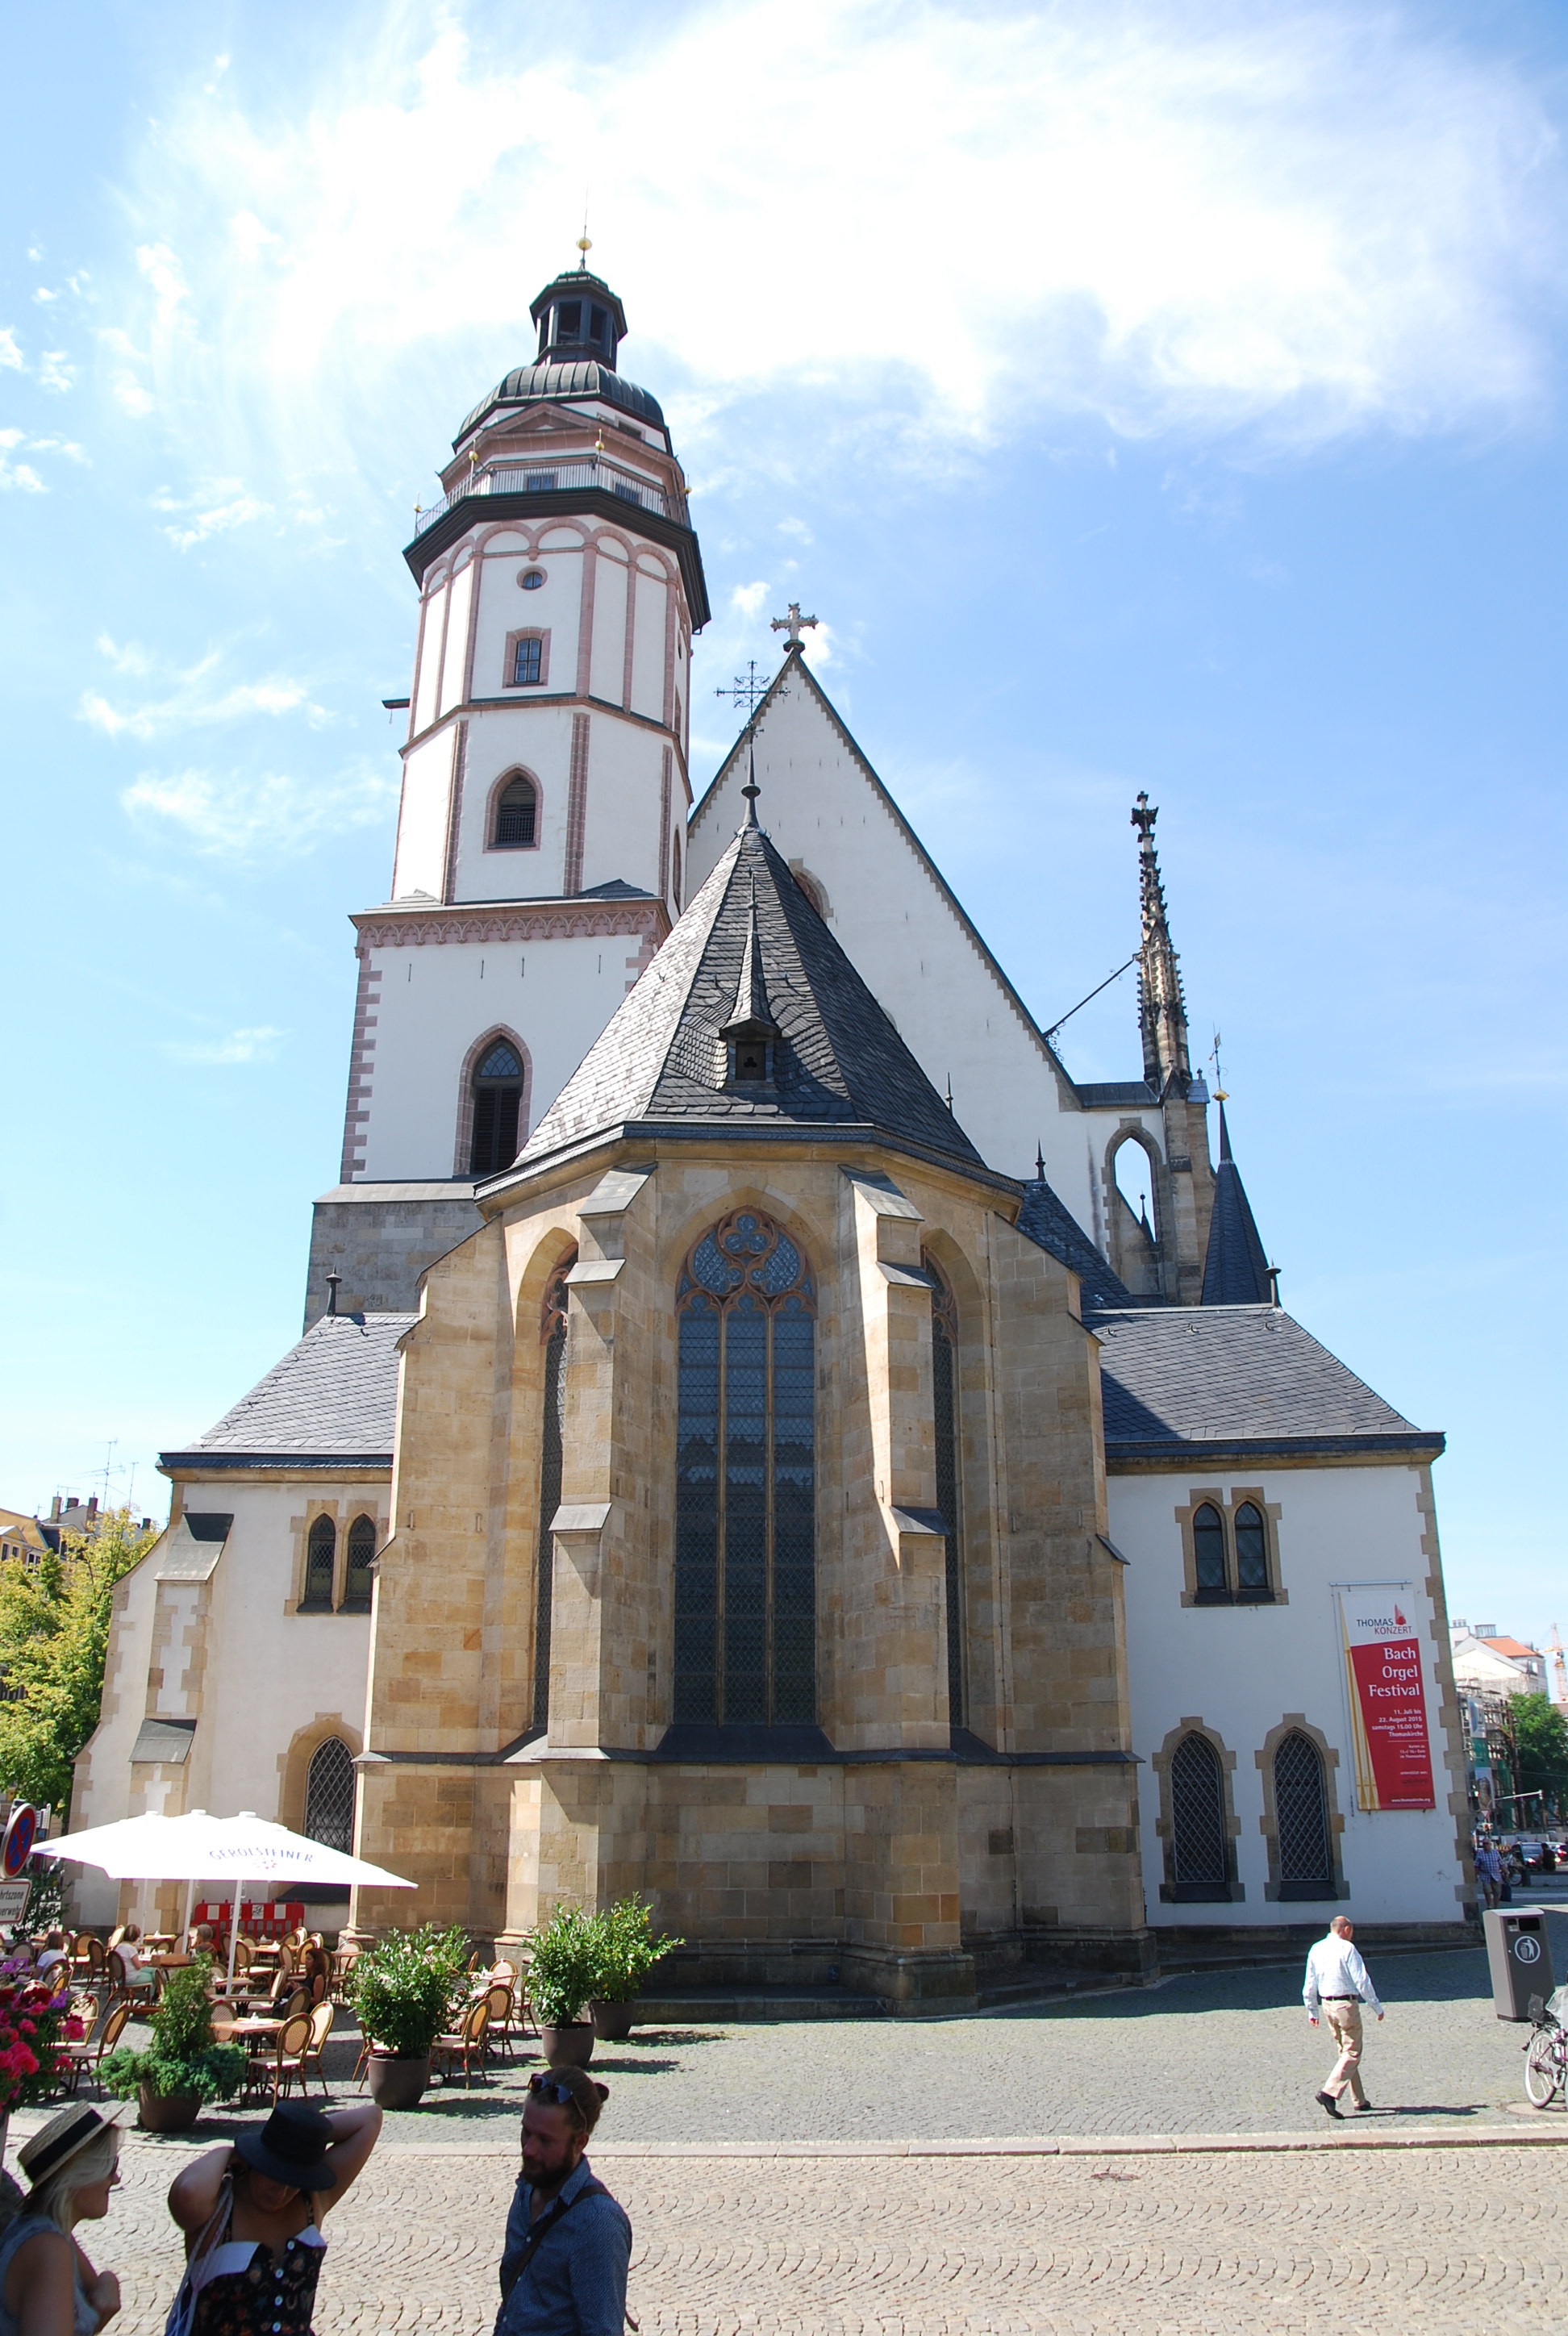 Thomaskirche.
